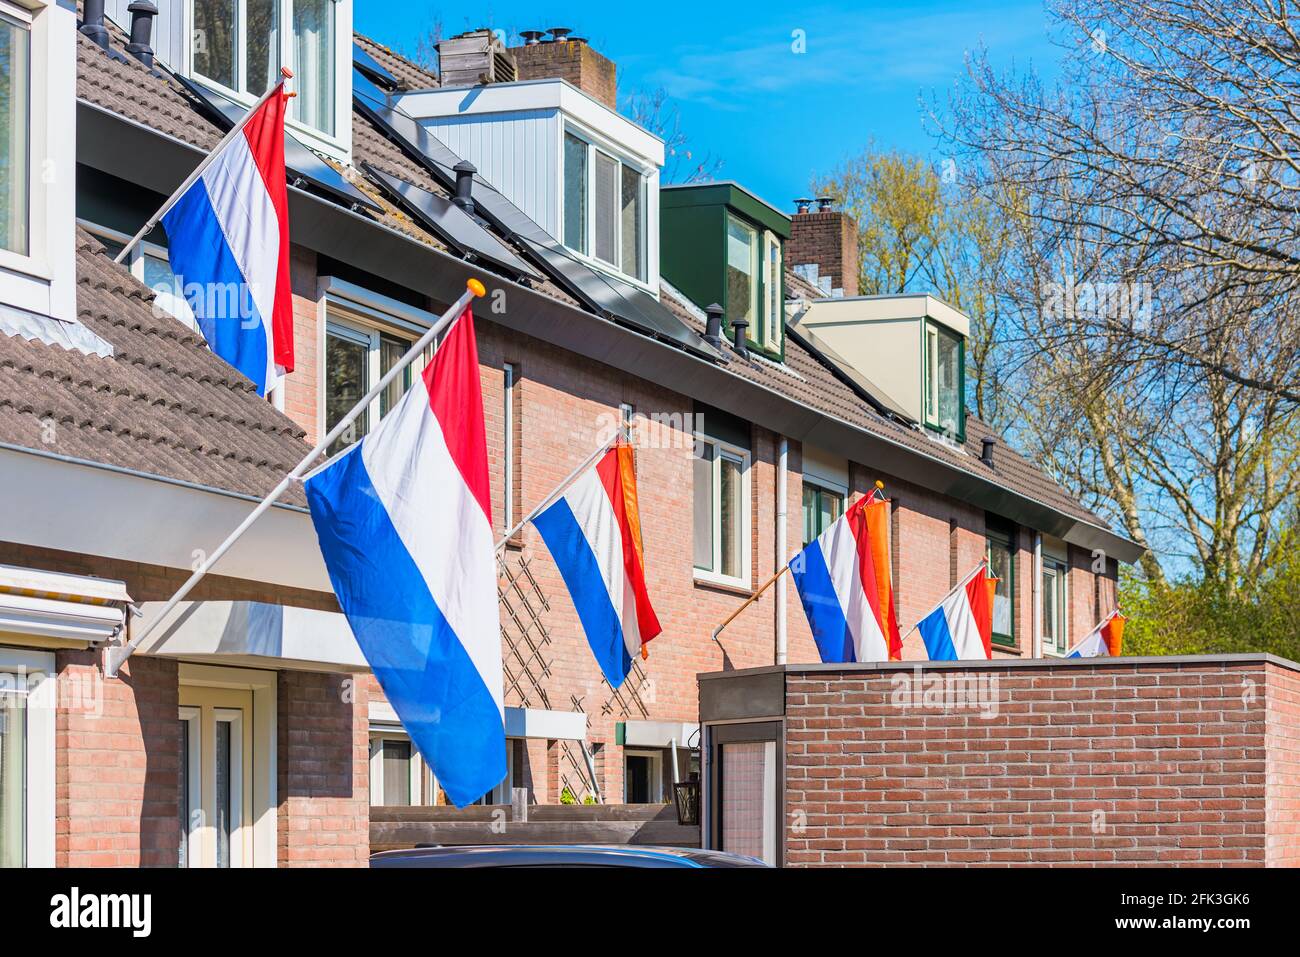 Banderas Holandesas colgando casas al aire libre en Alkmaar, Países Bajos para celebrar el Día del Rey el 27 de abril, una fiesta nacional en los Países Bajos Foto de stock